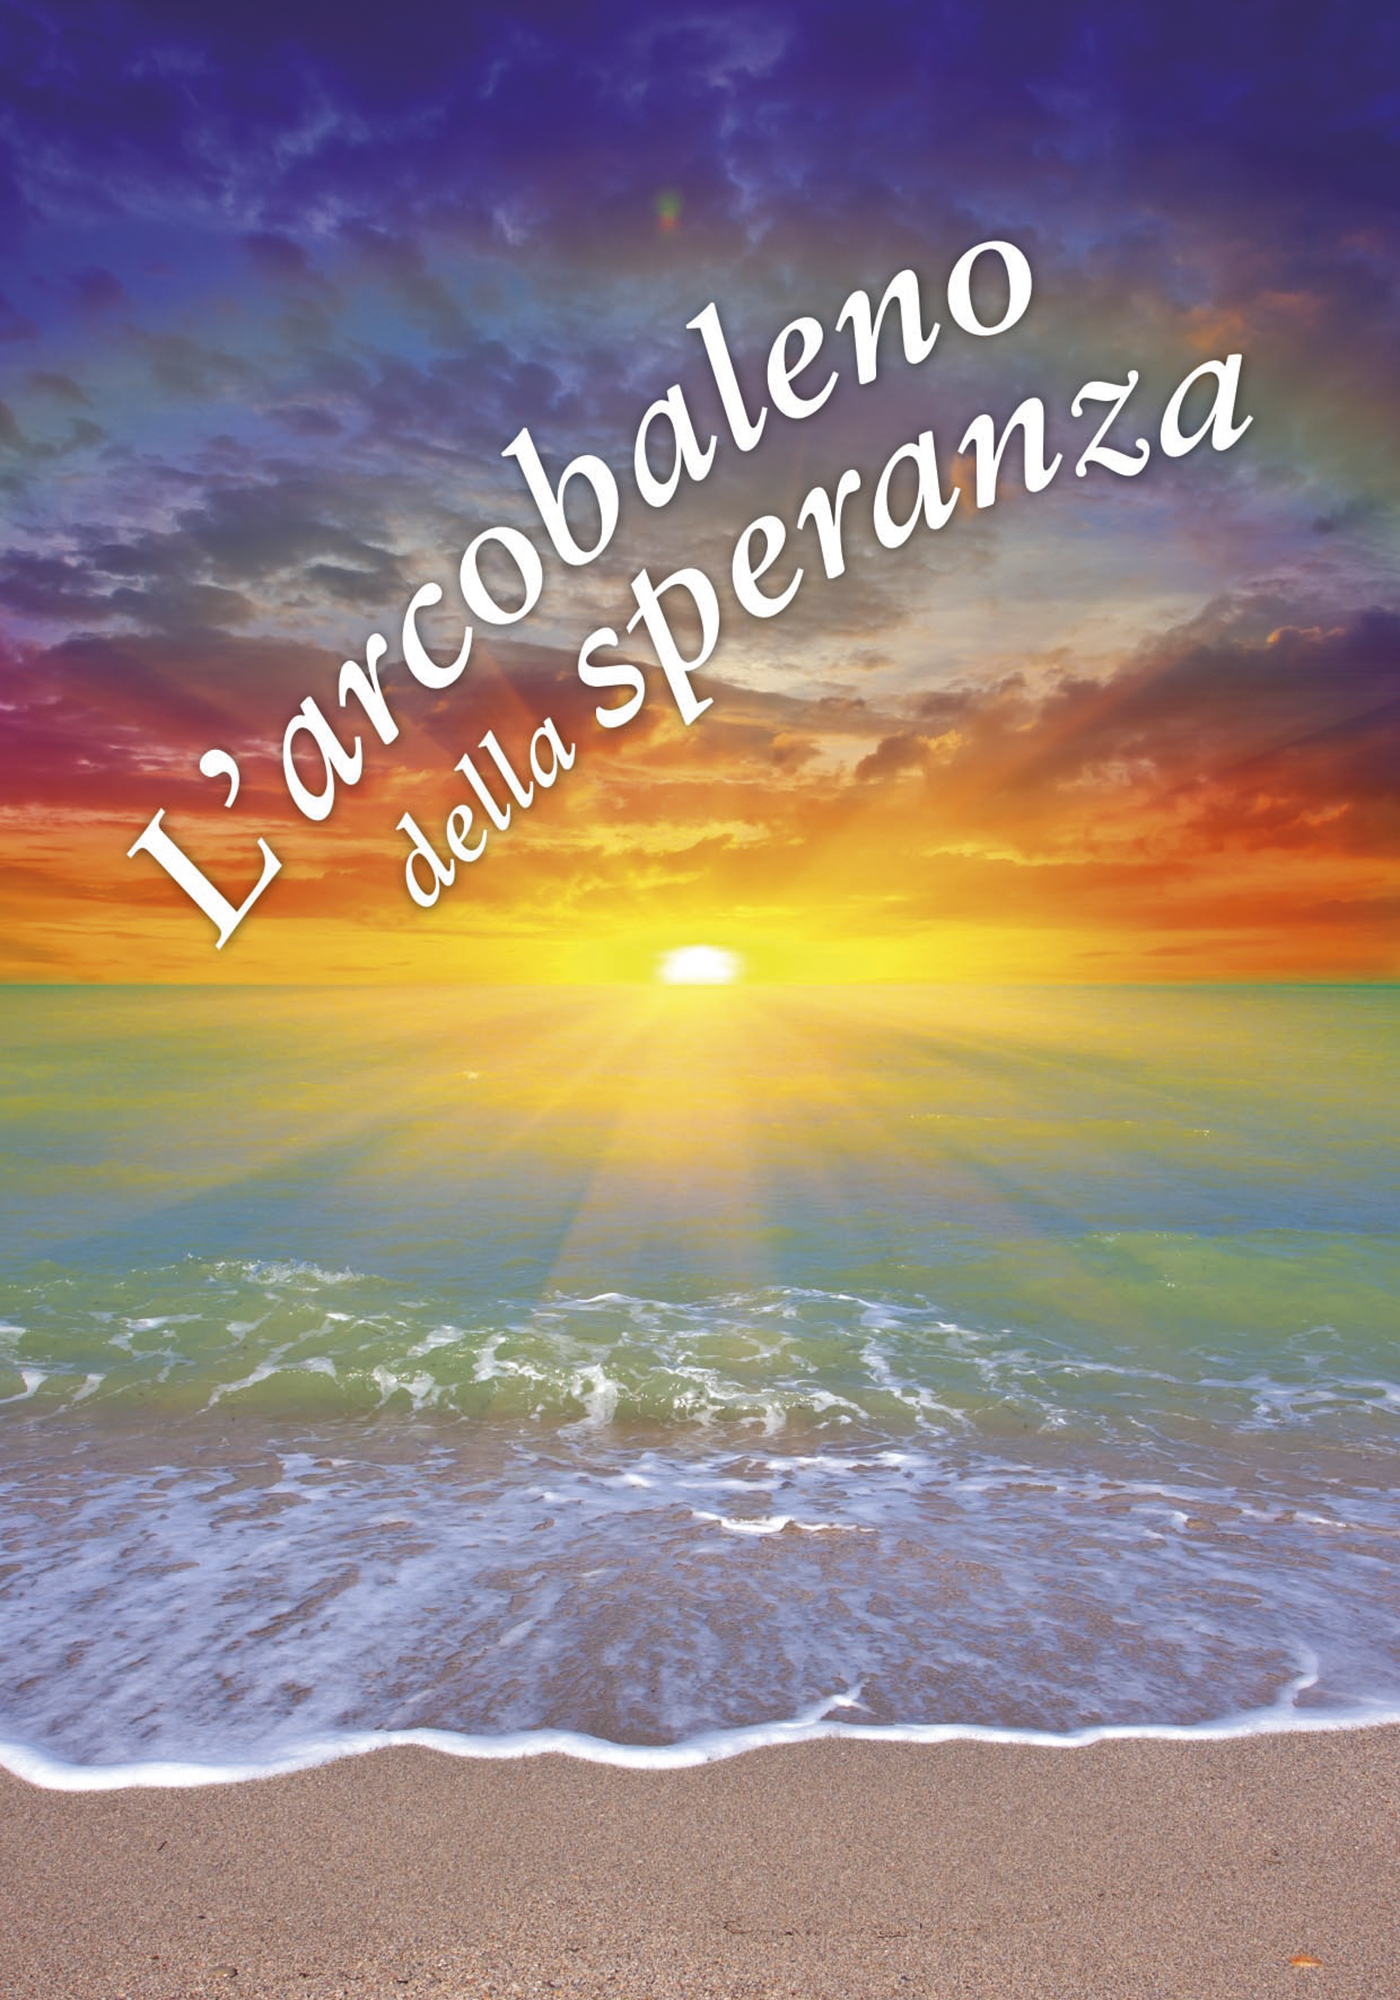 L Arcobaleno Della Speranza Un Pensiero Per Te Libro San Paolo Edizioni Settembre 2018 Ricordi Libreriadelsanto It